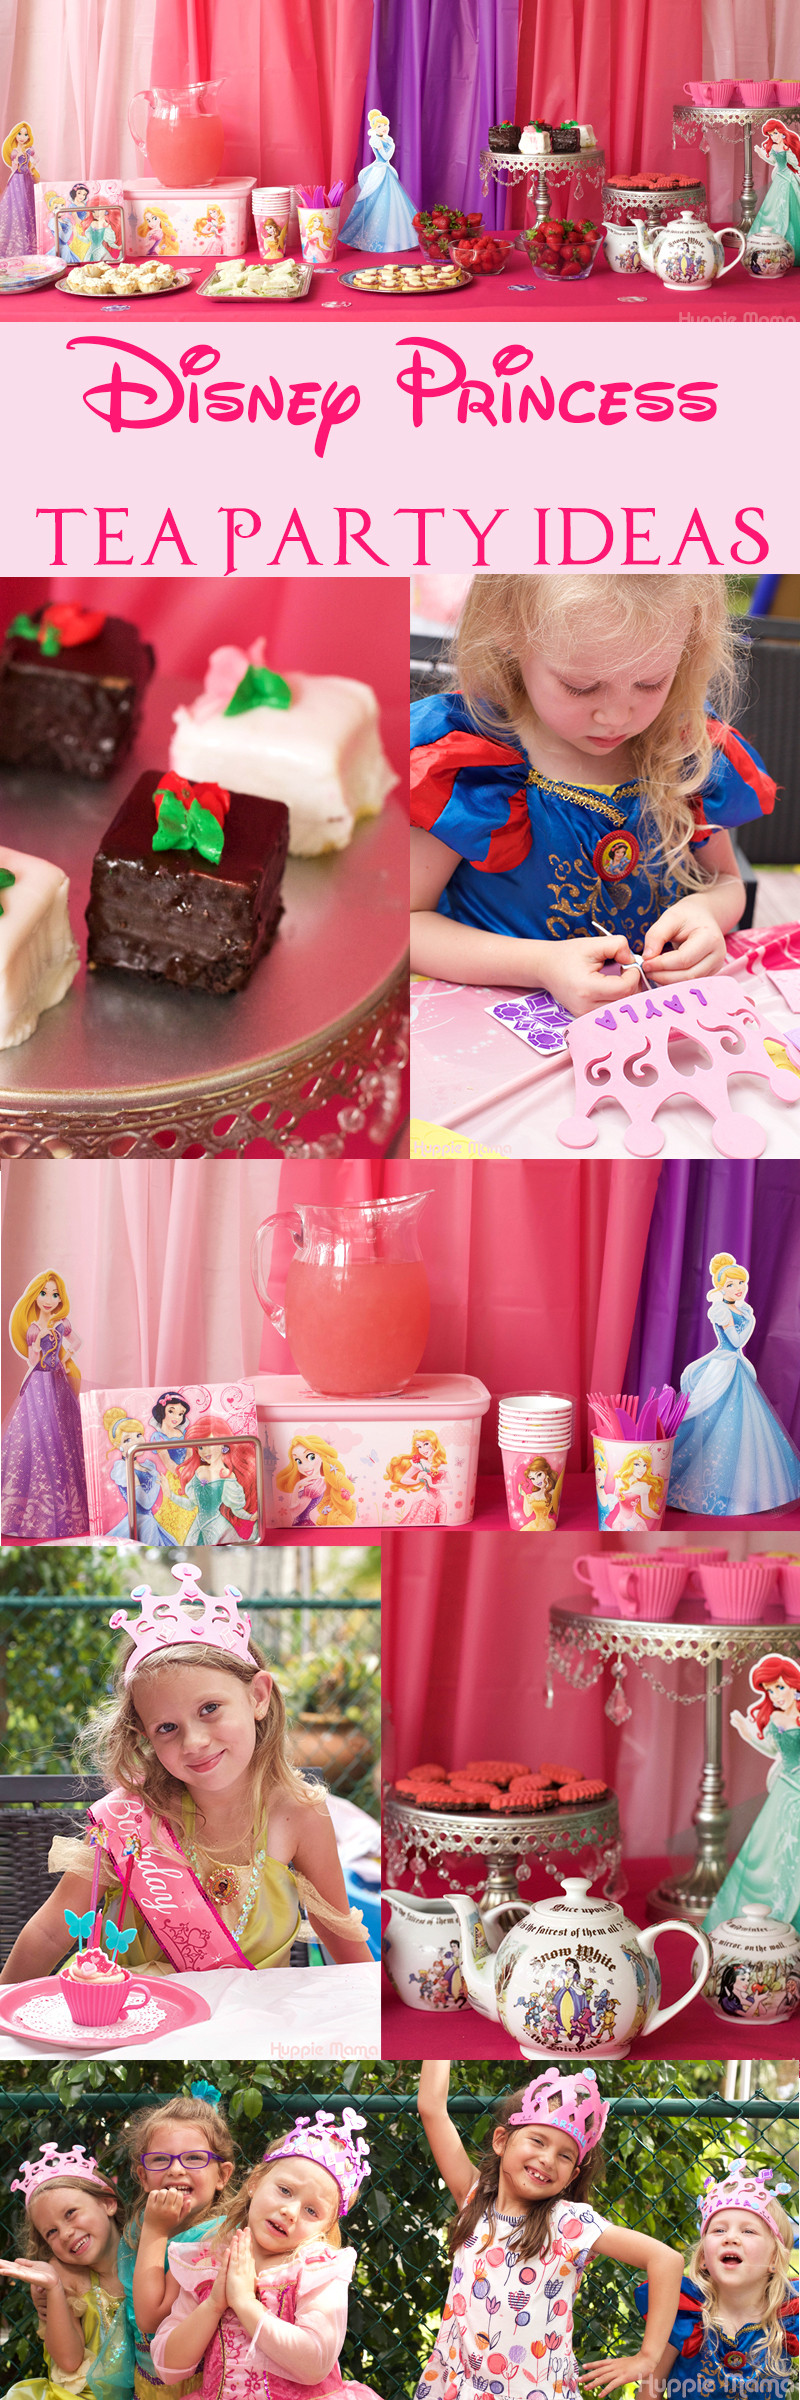 Princess Tea Party Ideas
 Disney Princess Tea Party Ideas Our Potluck Family